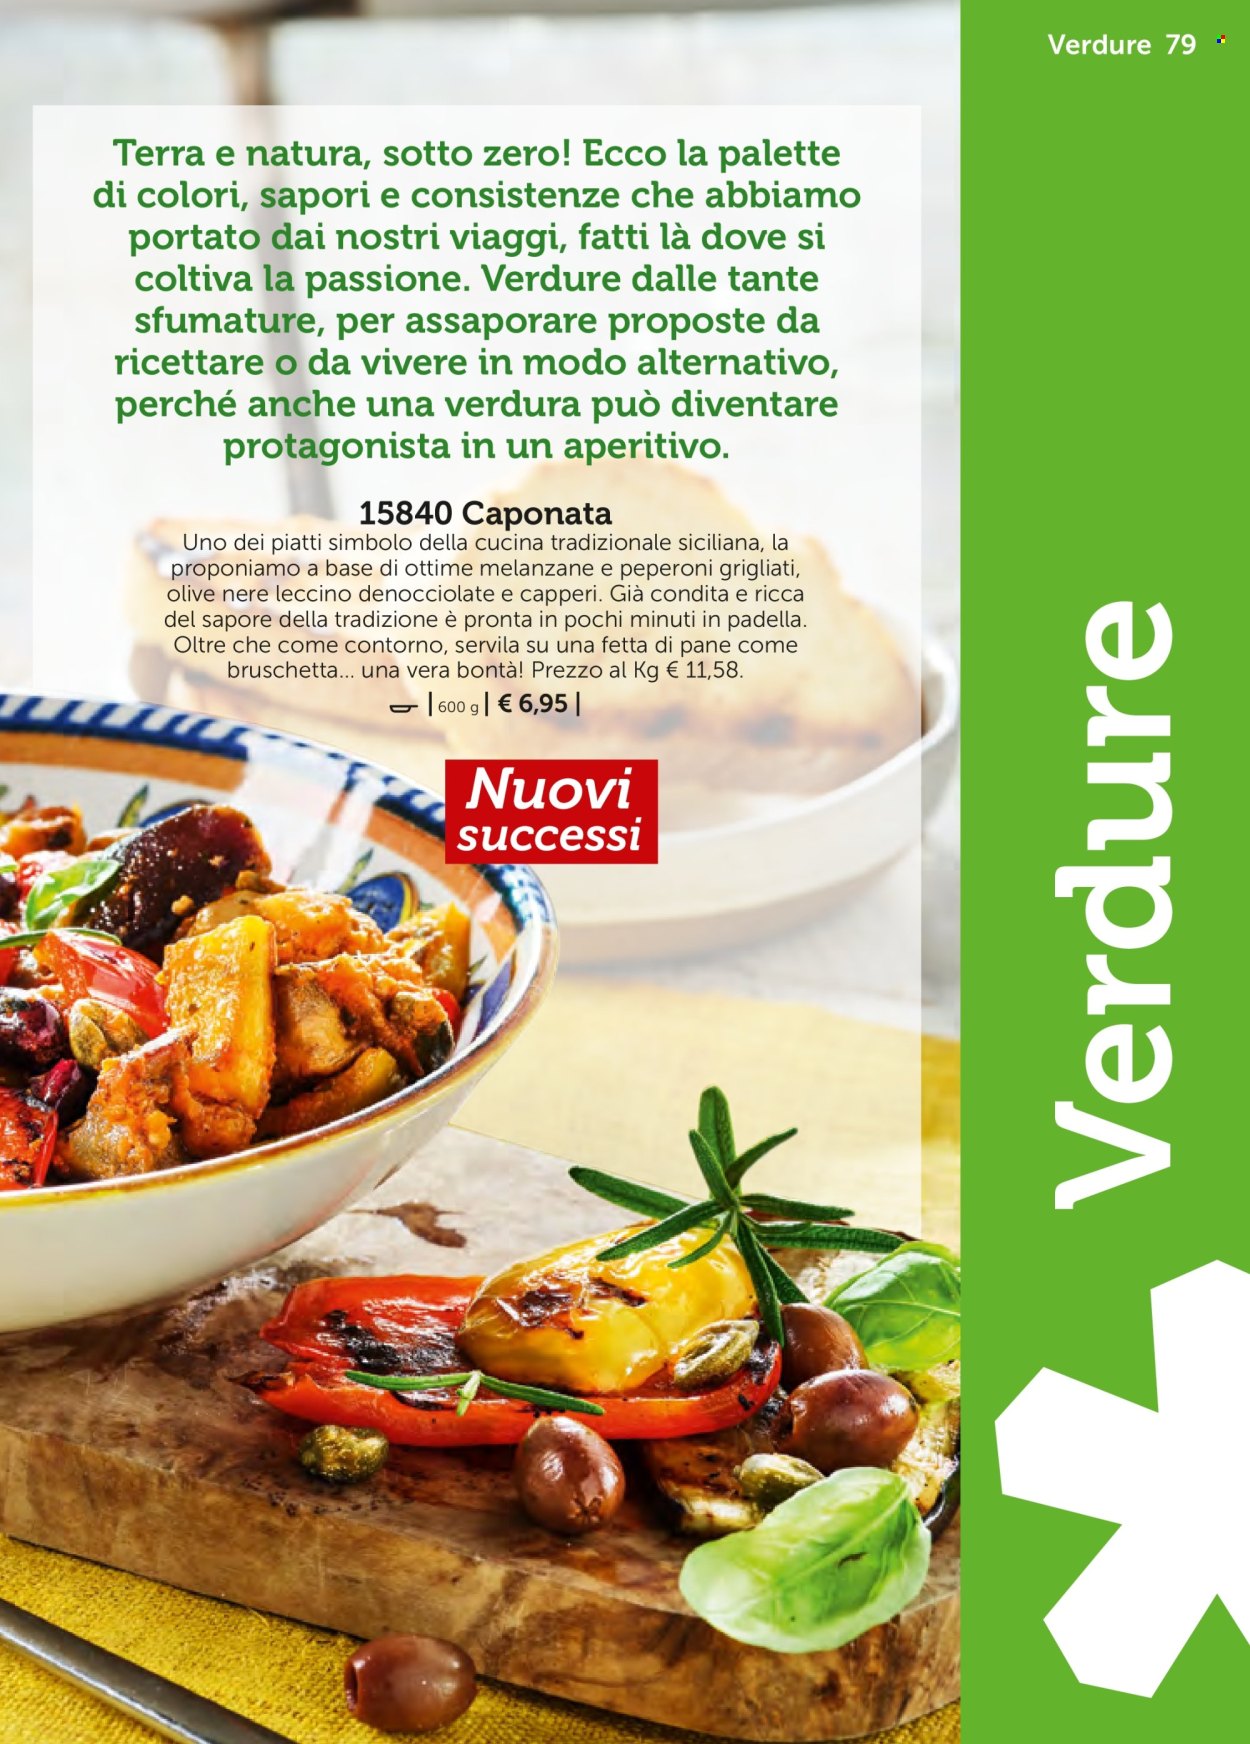 thumbnail - Volantino Bofrost - Prodotti in offerta - bruschetta, peperoni grigliati, pane, aperitivo. Pagina 79.